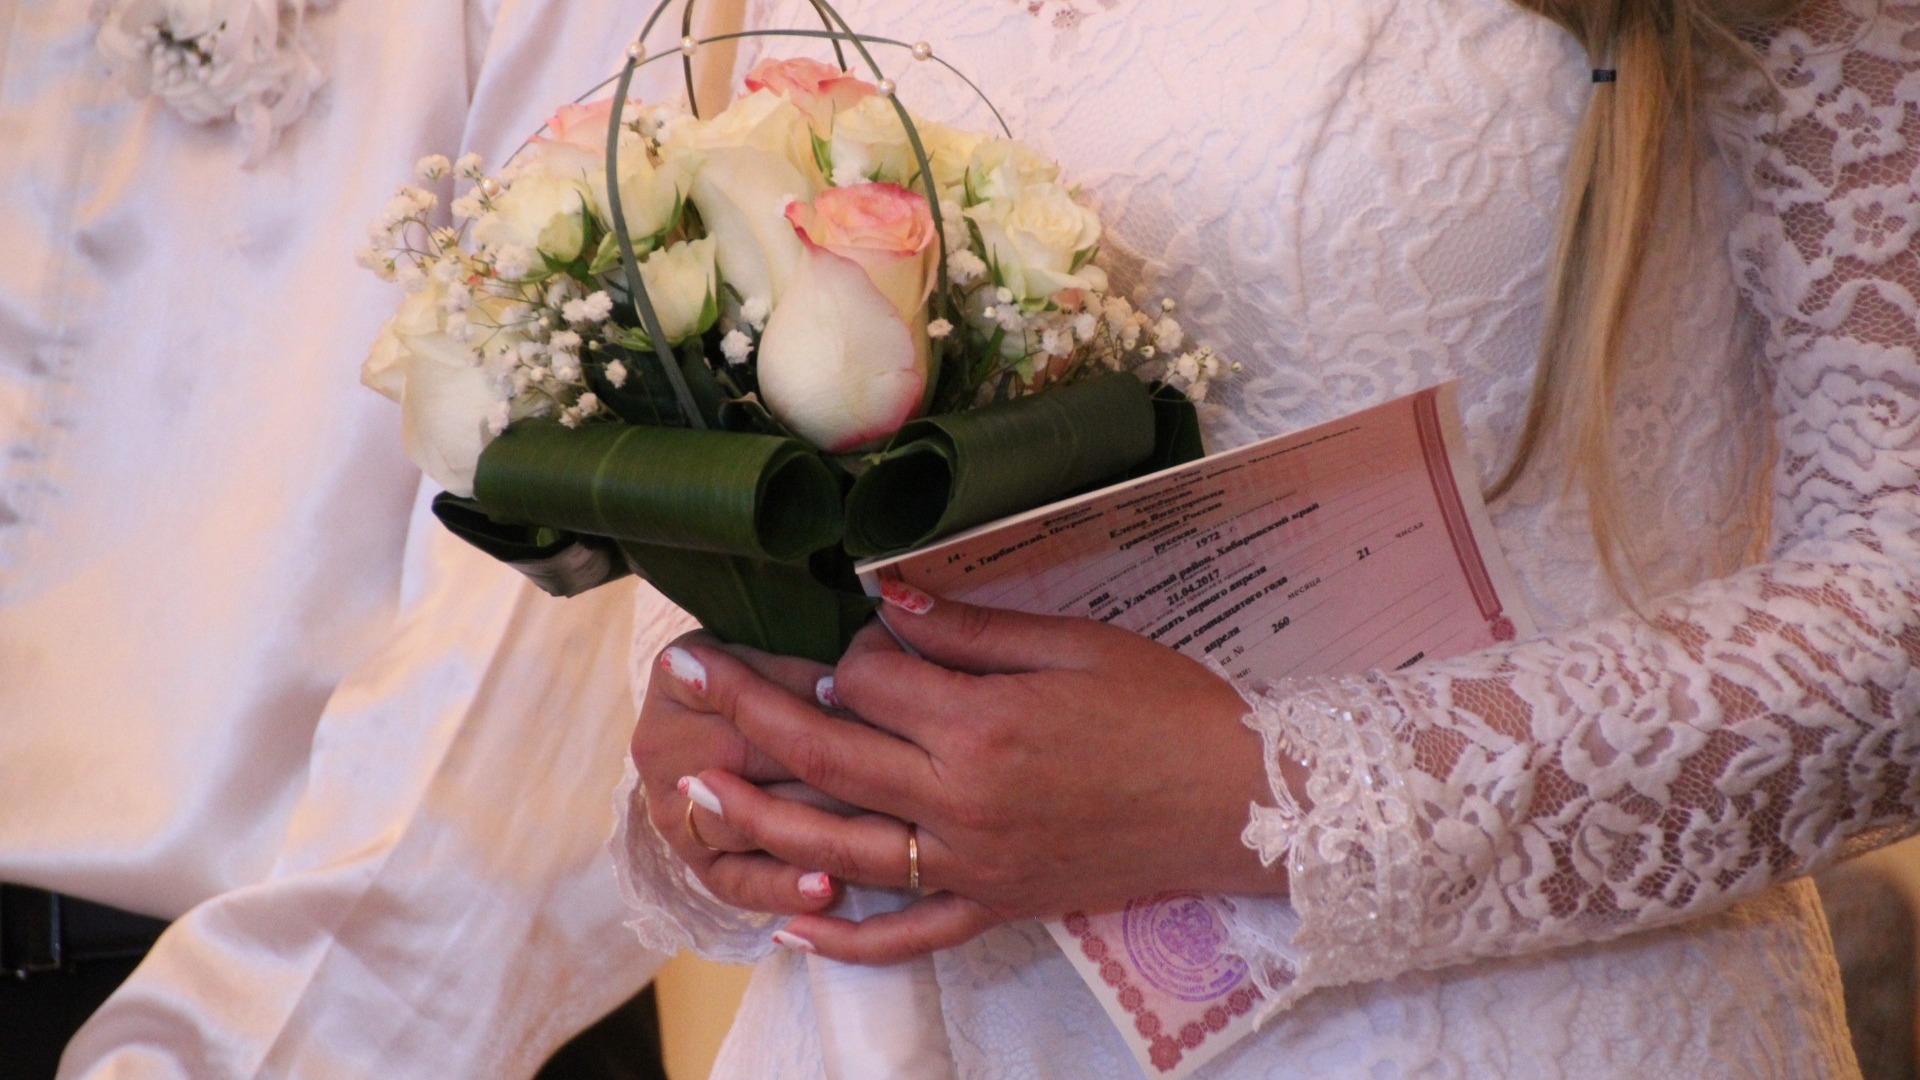 Крах союза. В мае омские пары разводились в 1,5 раза чаще, чем вступали в брак